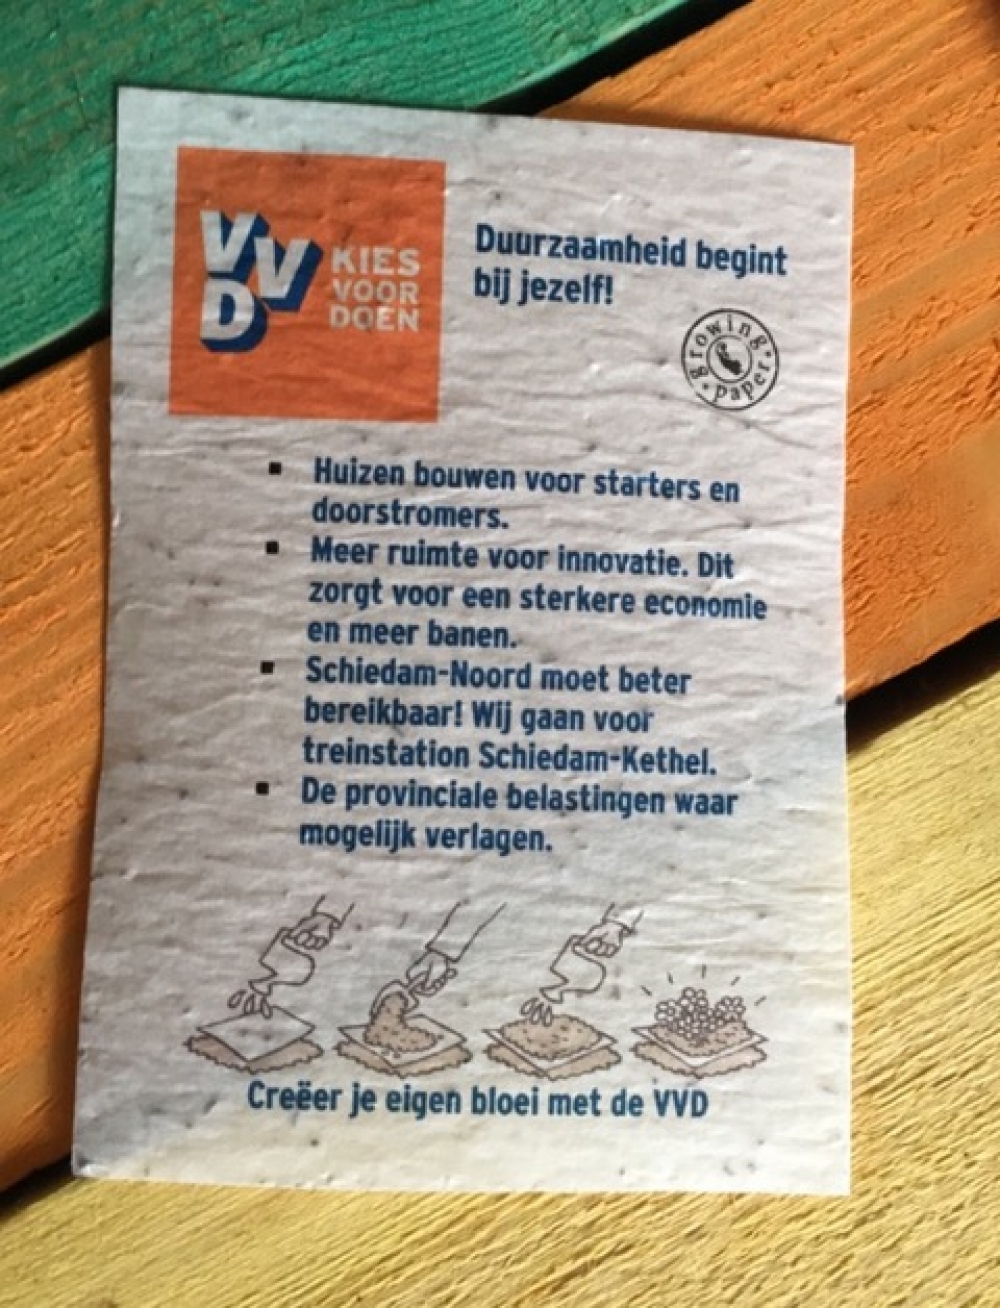 Uit de VVD verkiezingsflyer groeit een veldboeket